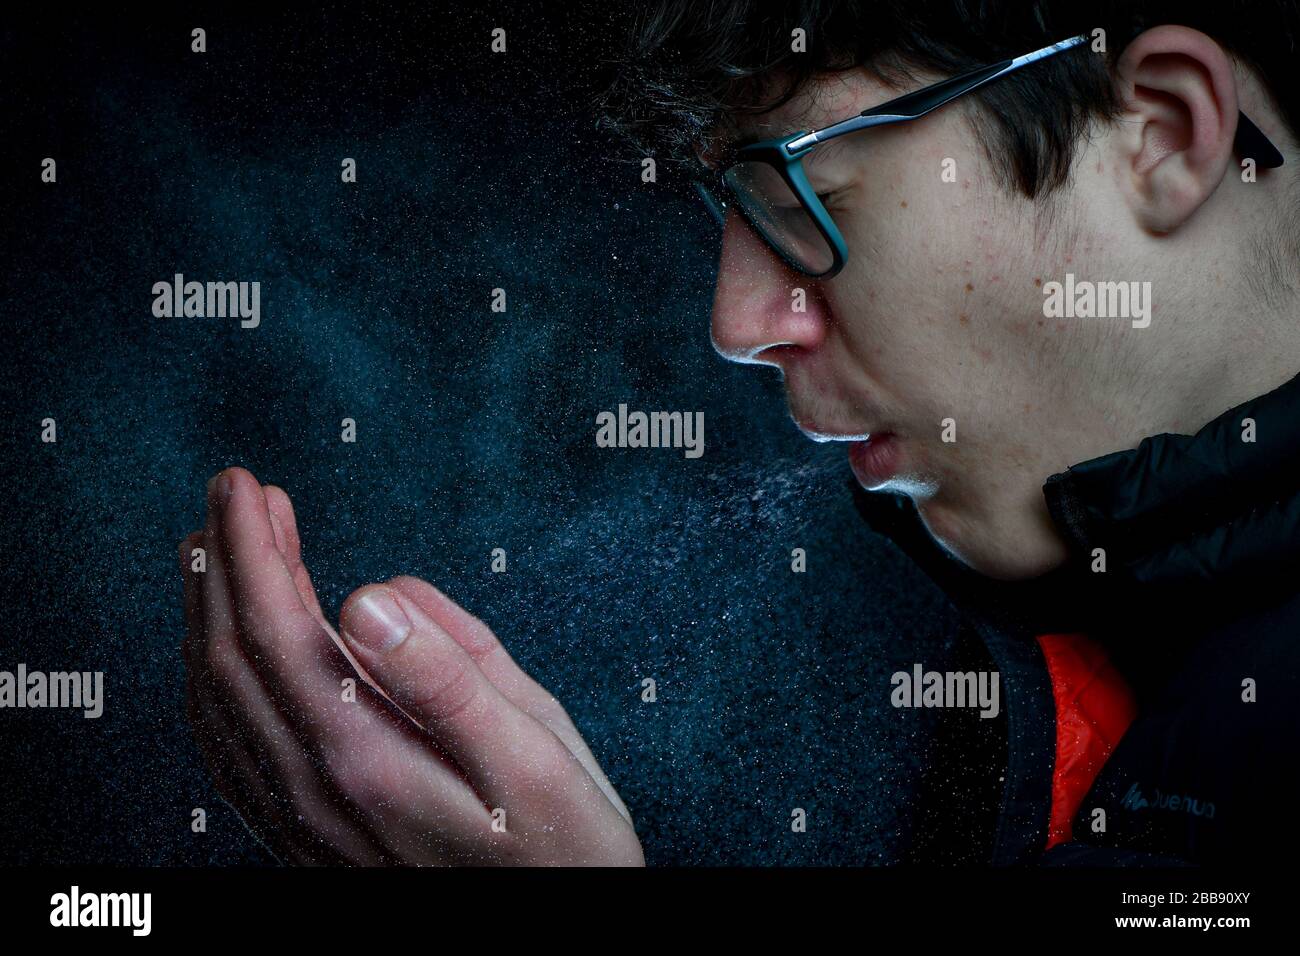 Ein Teenager-Junge, der niest/hustet, zeigt die Menge an Spray oder Virus, die aus dem Mund kommt. Konzeptbild, um zu zeigen, wie sich Bakterien ausbreiten. Stockfoto